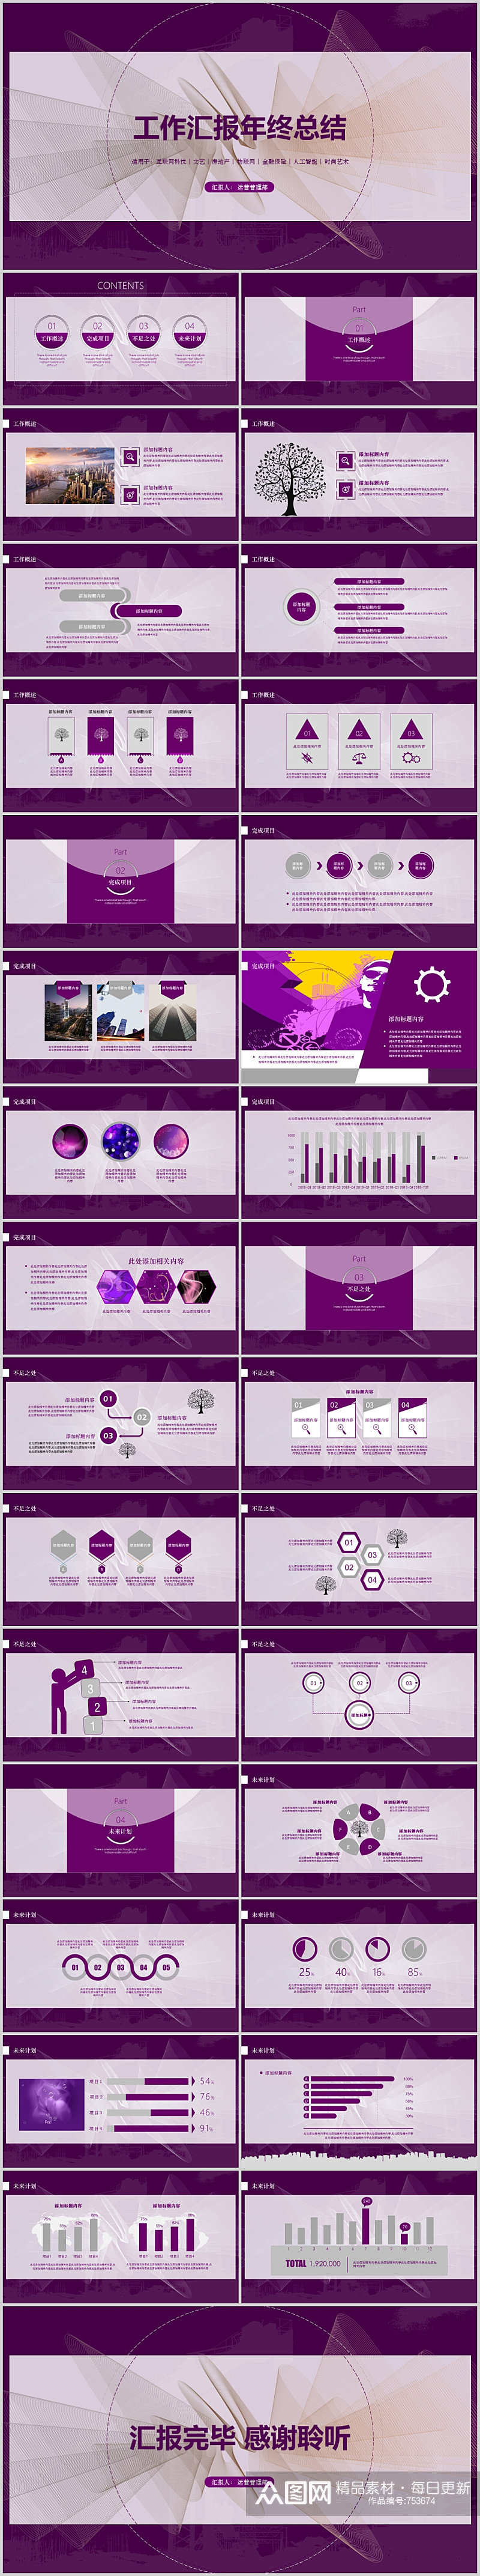 紫色时尚商业计划书年度报告模板素材